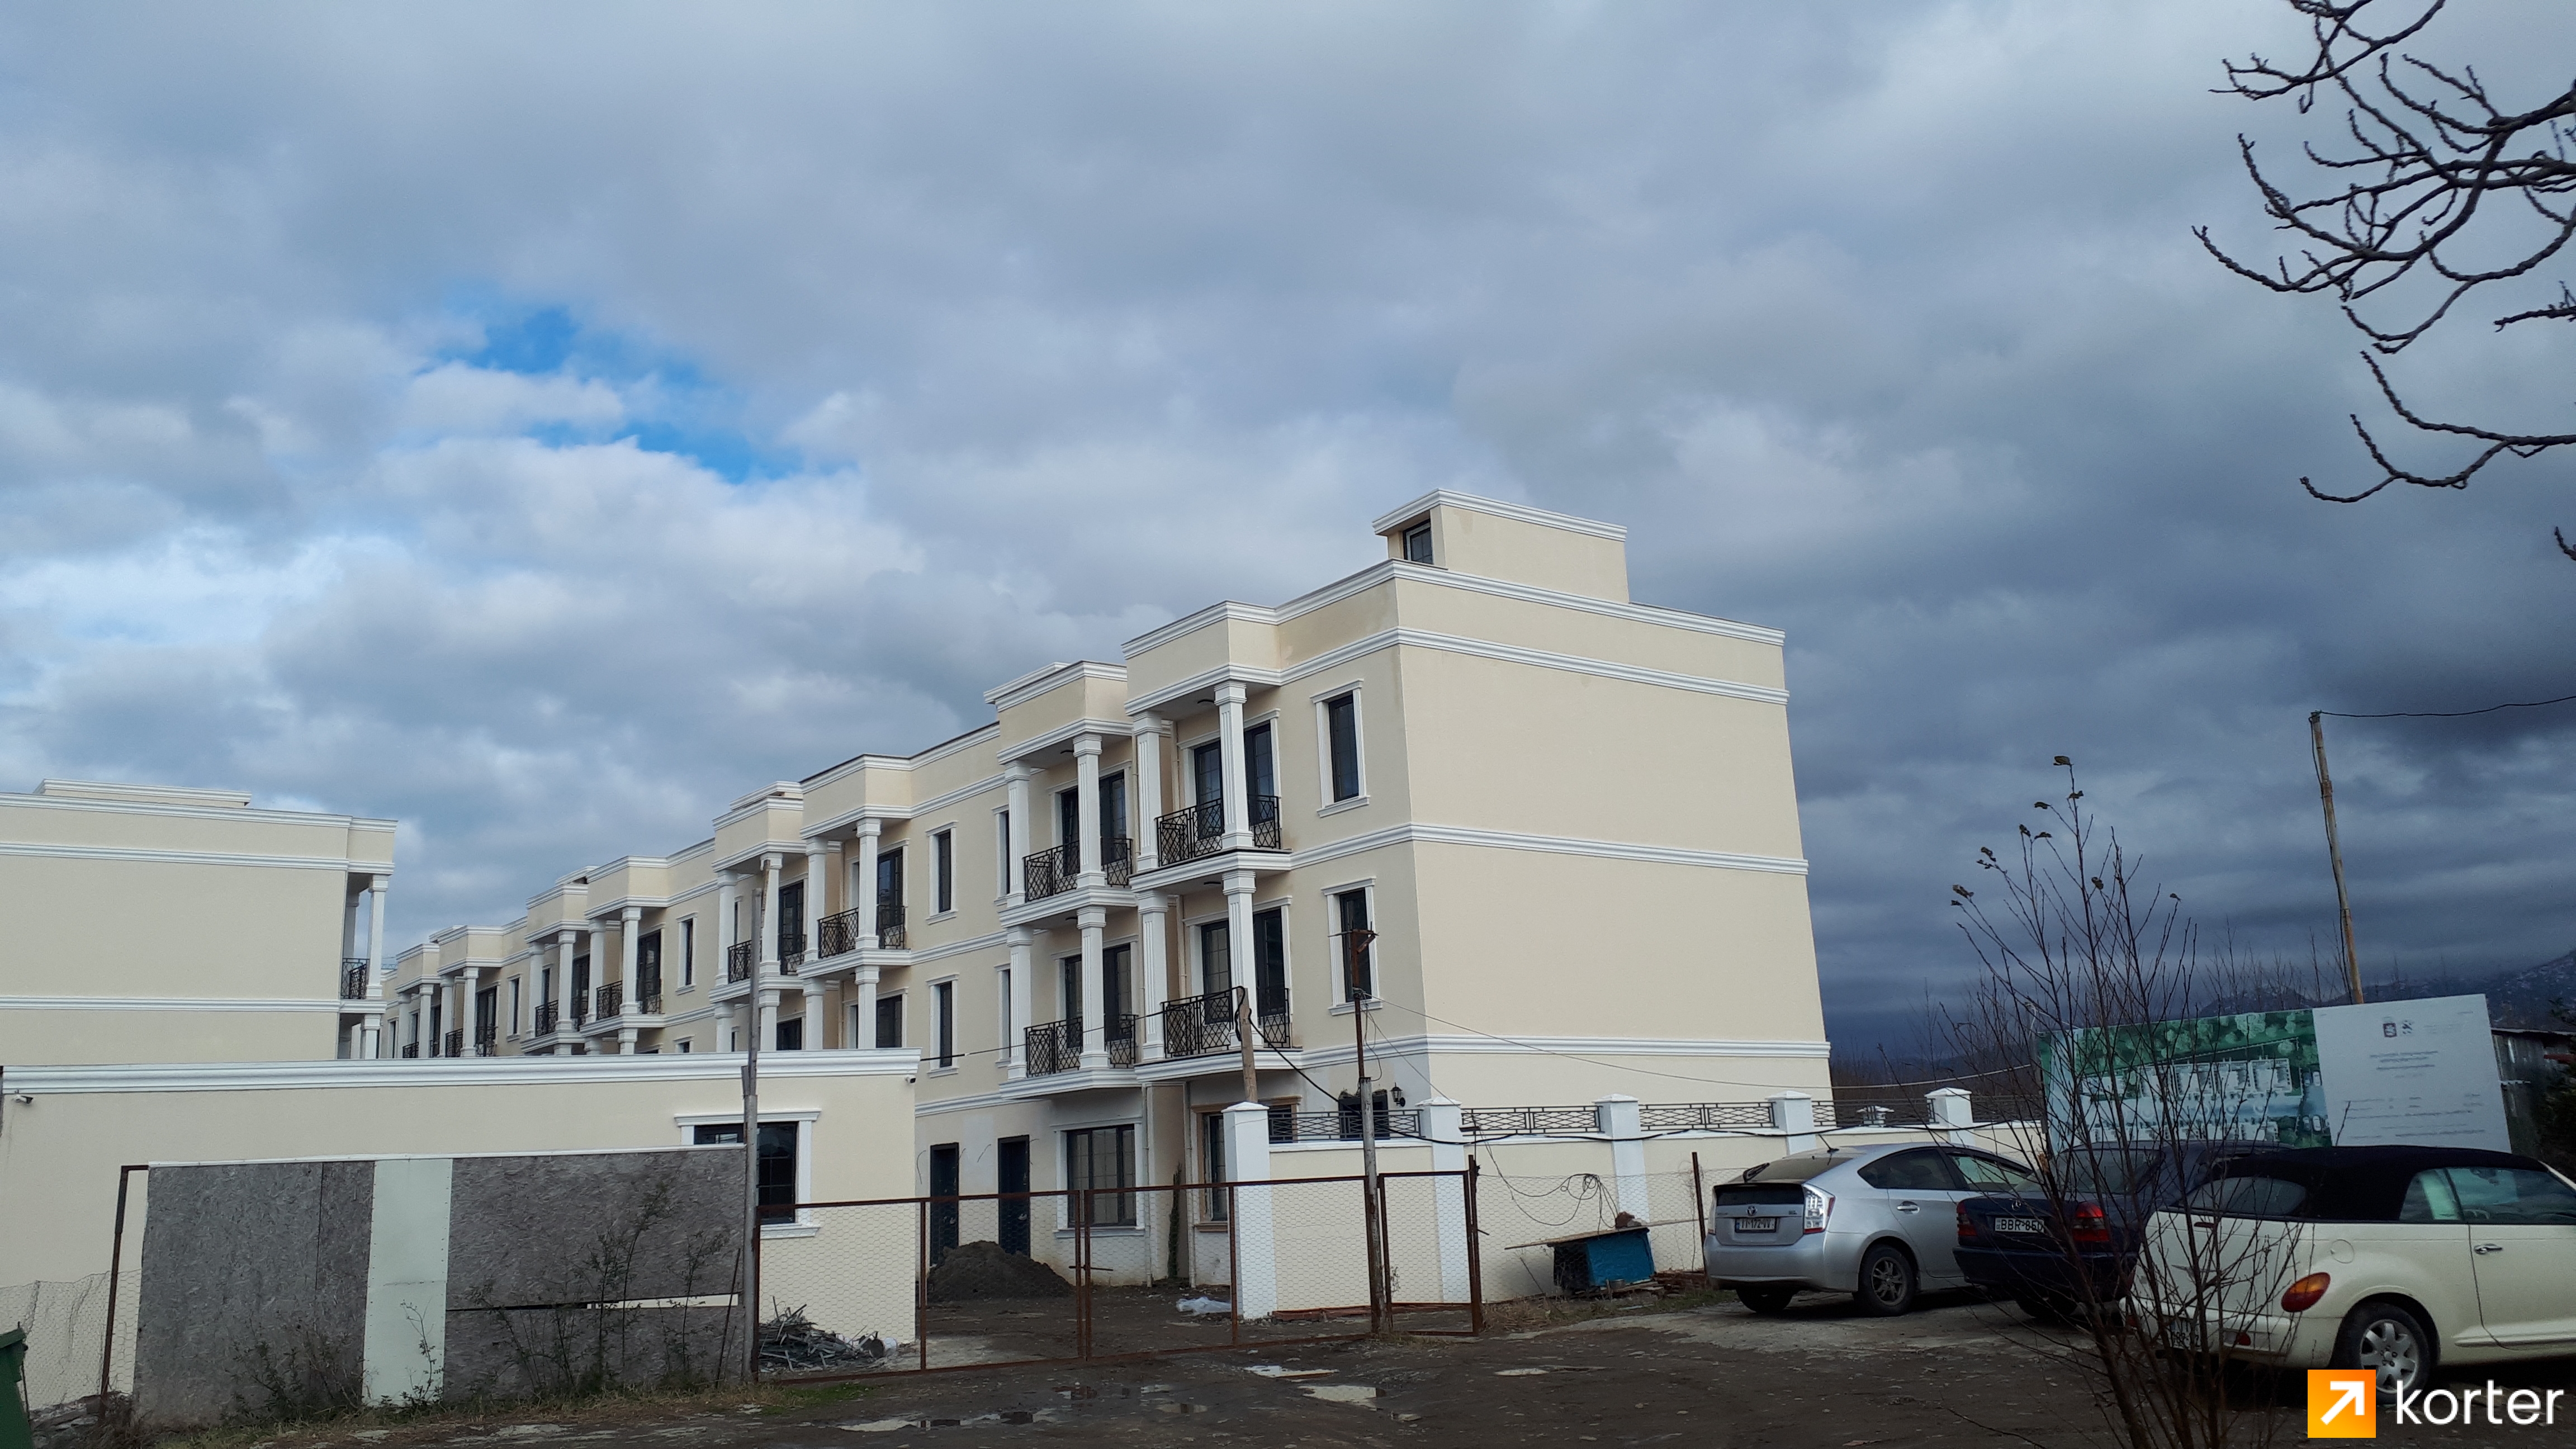 Construction progress Batumi Villas - Angle 3, February 2021